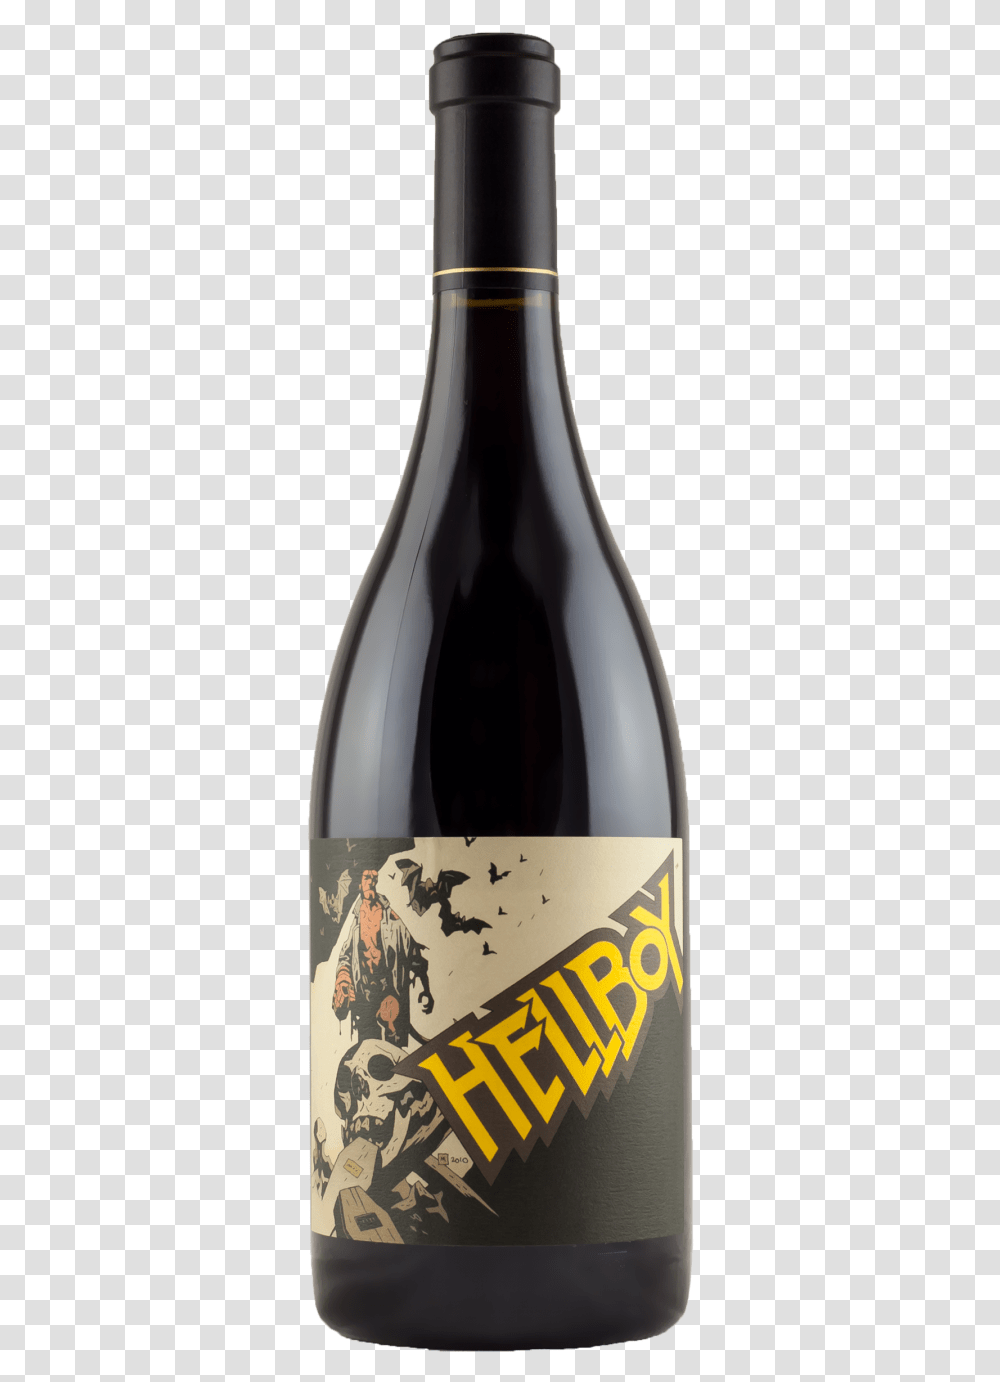 Hellboy Wine, Alcohol, Beverage, Drink, Bottle Transparent Png